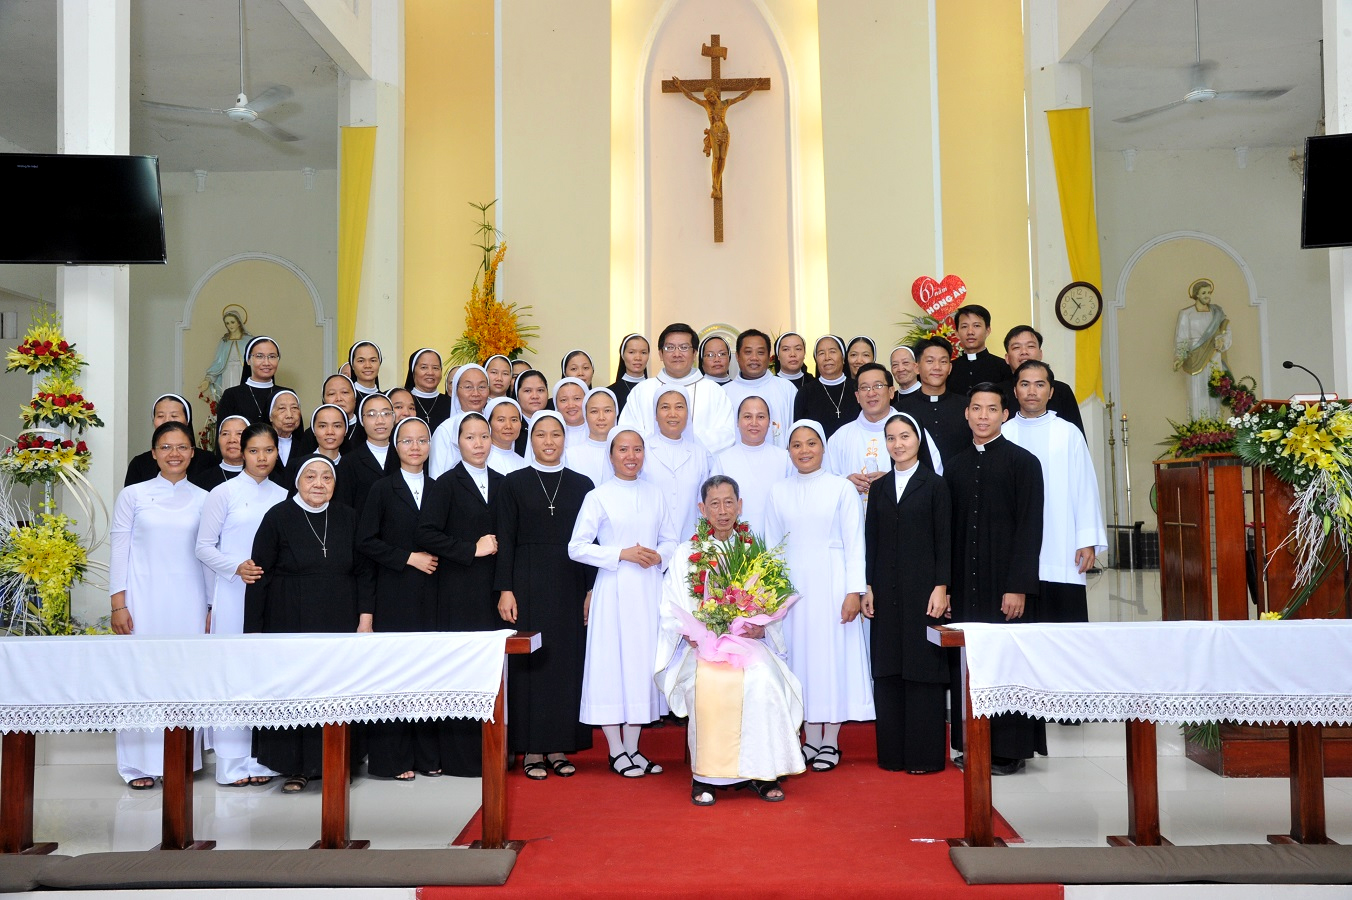  Linh mục Phaolô Nguyễn Văn ThảnhThánh tại lễ tạ ơn Ngọc Khánh 60 năm linh mục